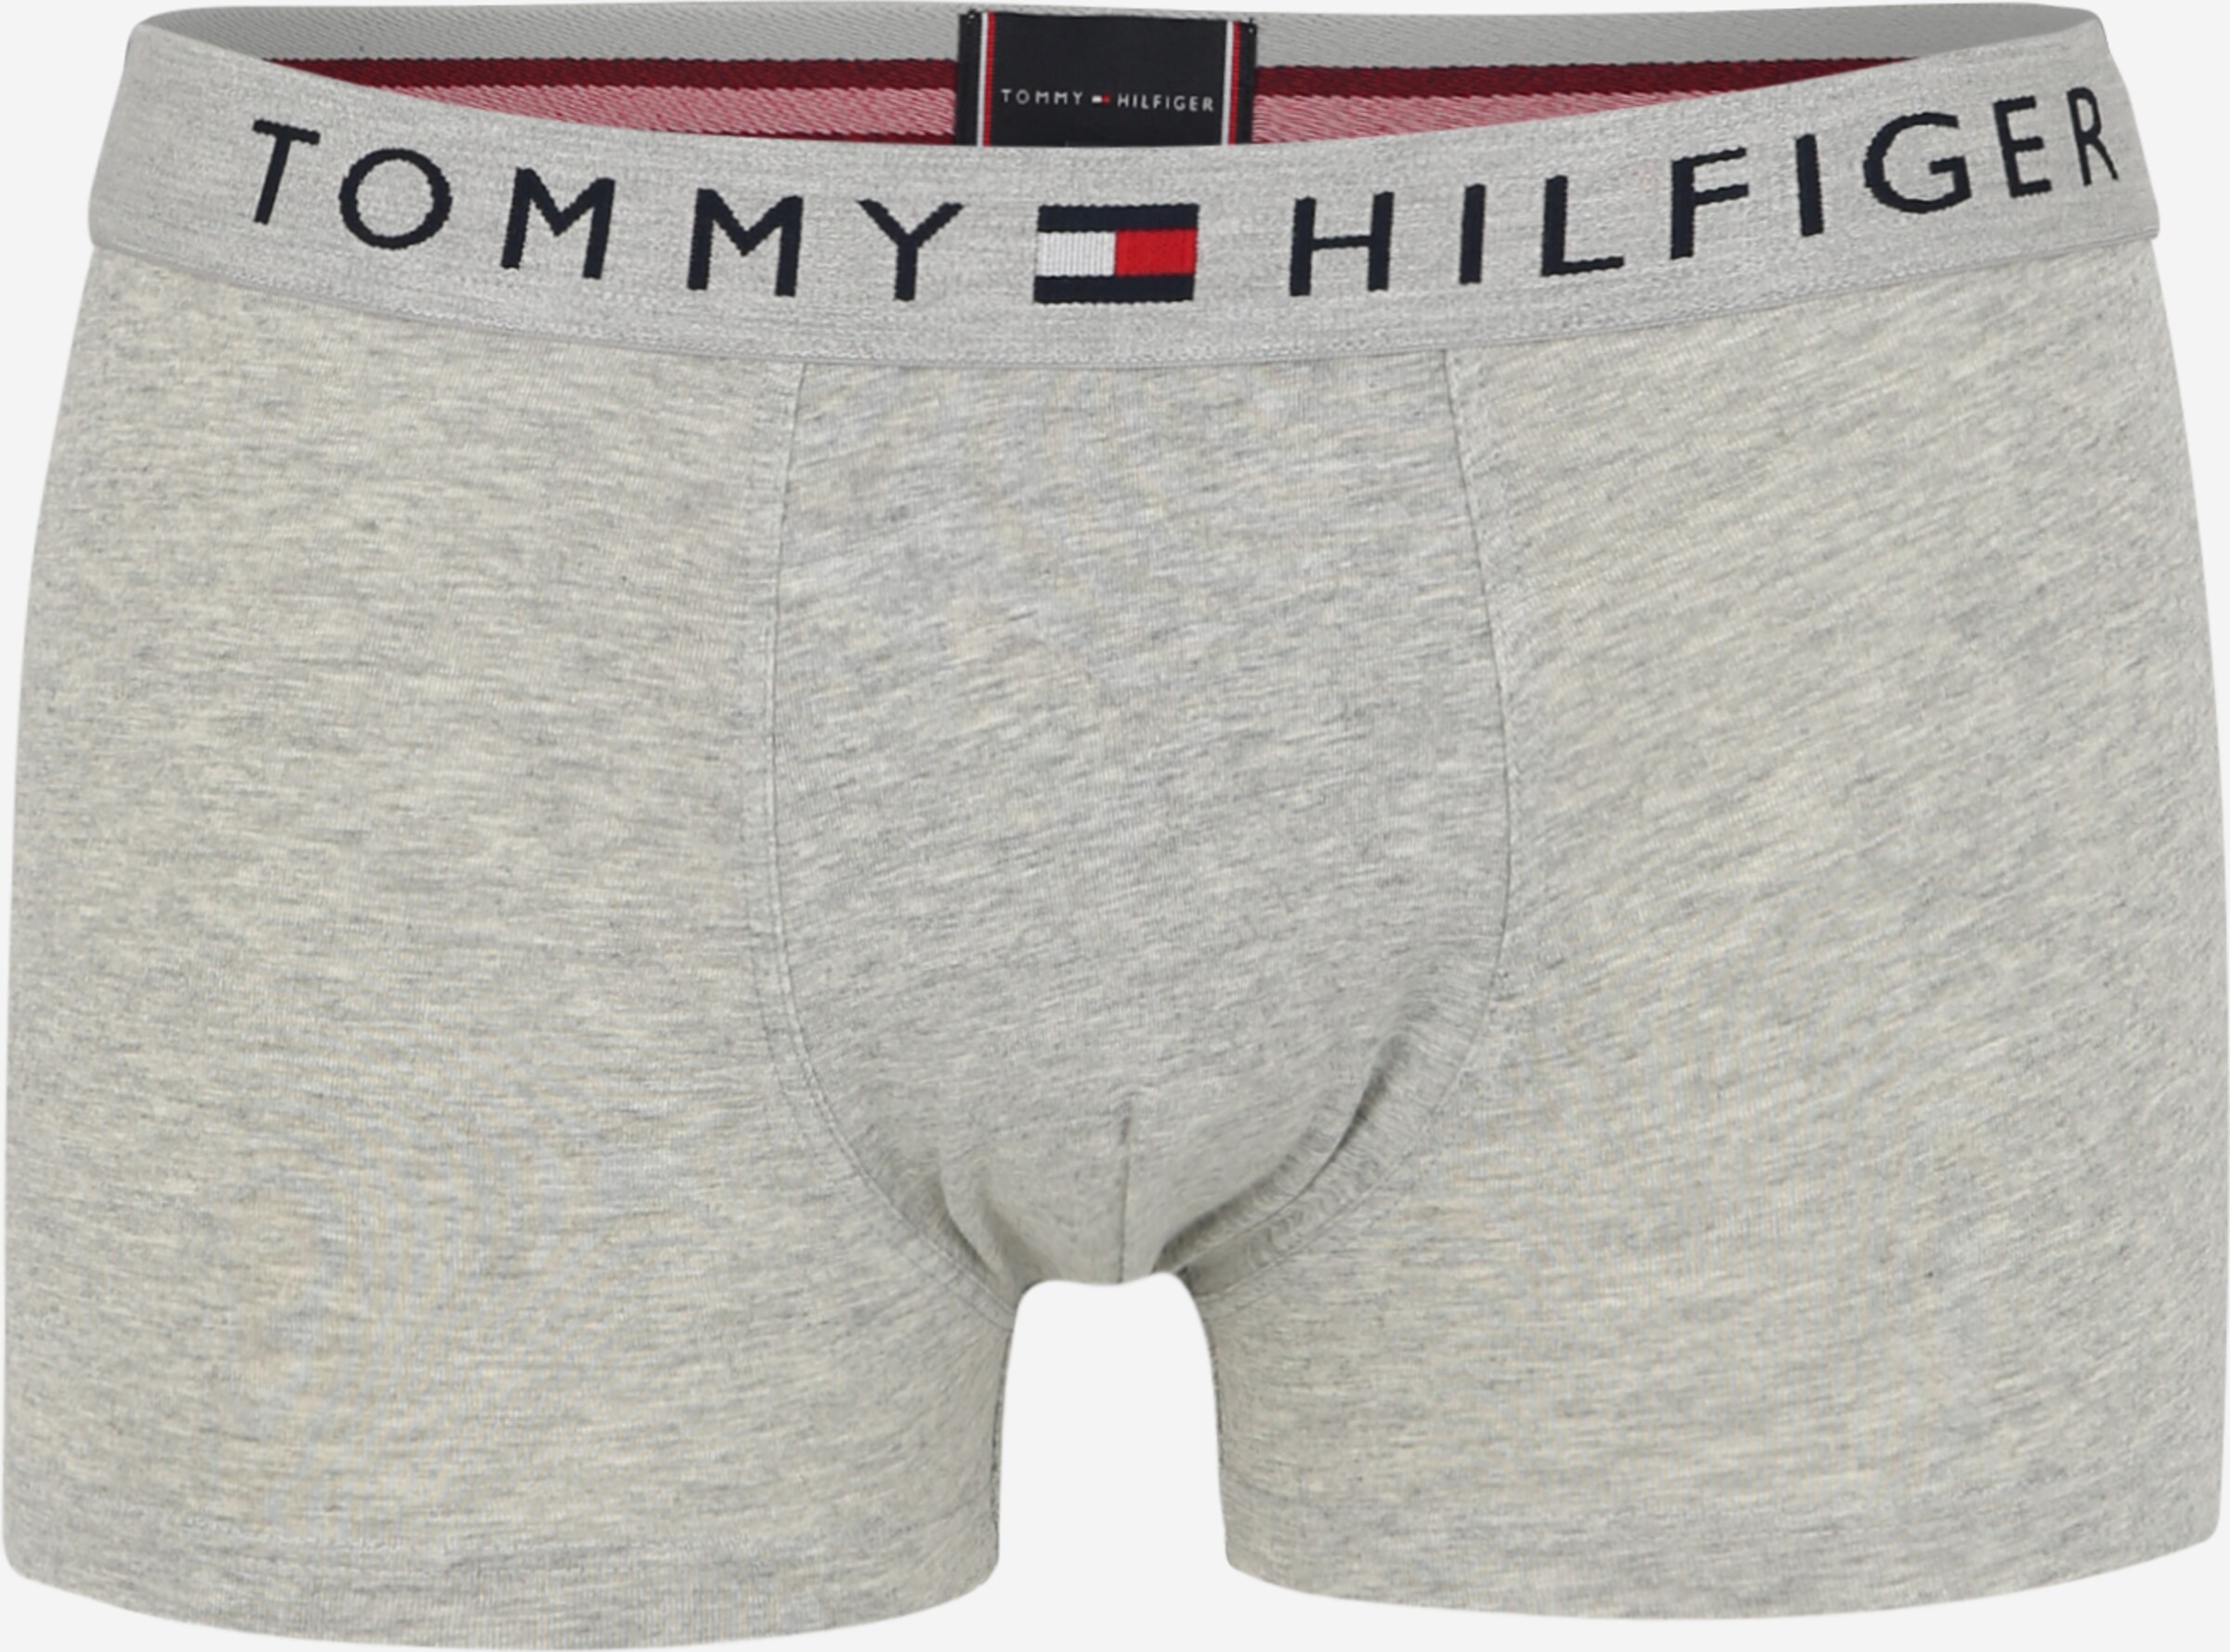 Мужские трусы tommy. Трусы Томми Хилфигер мужские. Tommy Hilfiger трусы мужские 12 лет. Трусы Tommy Hilfiger XL. Трусы мужские Tommy Hilfiger g Star underwear.